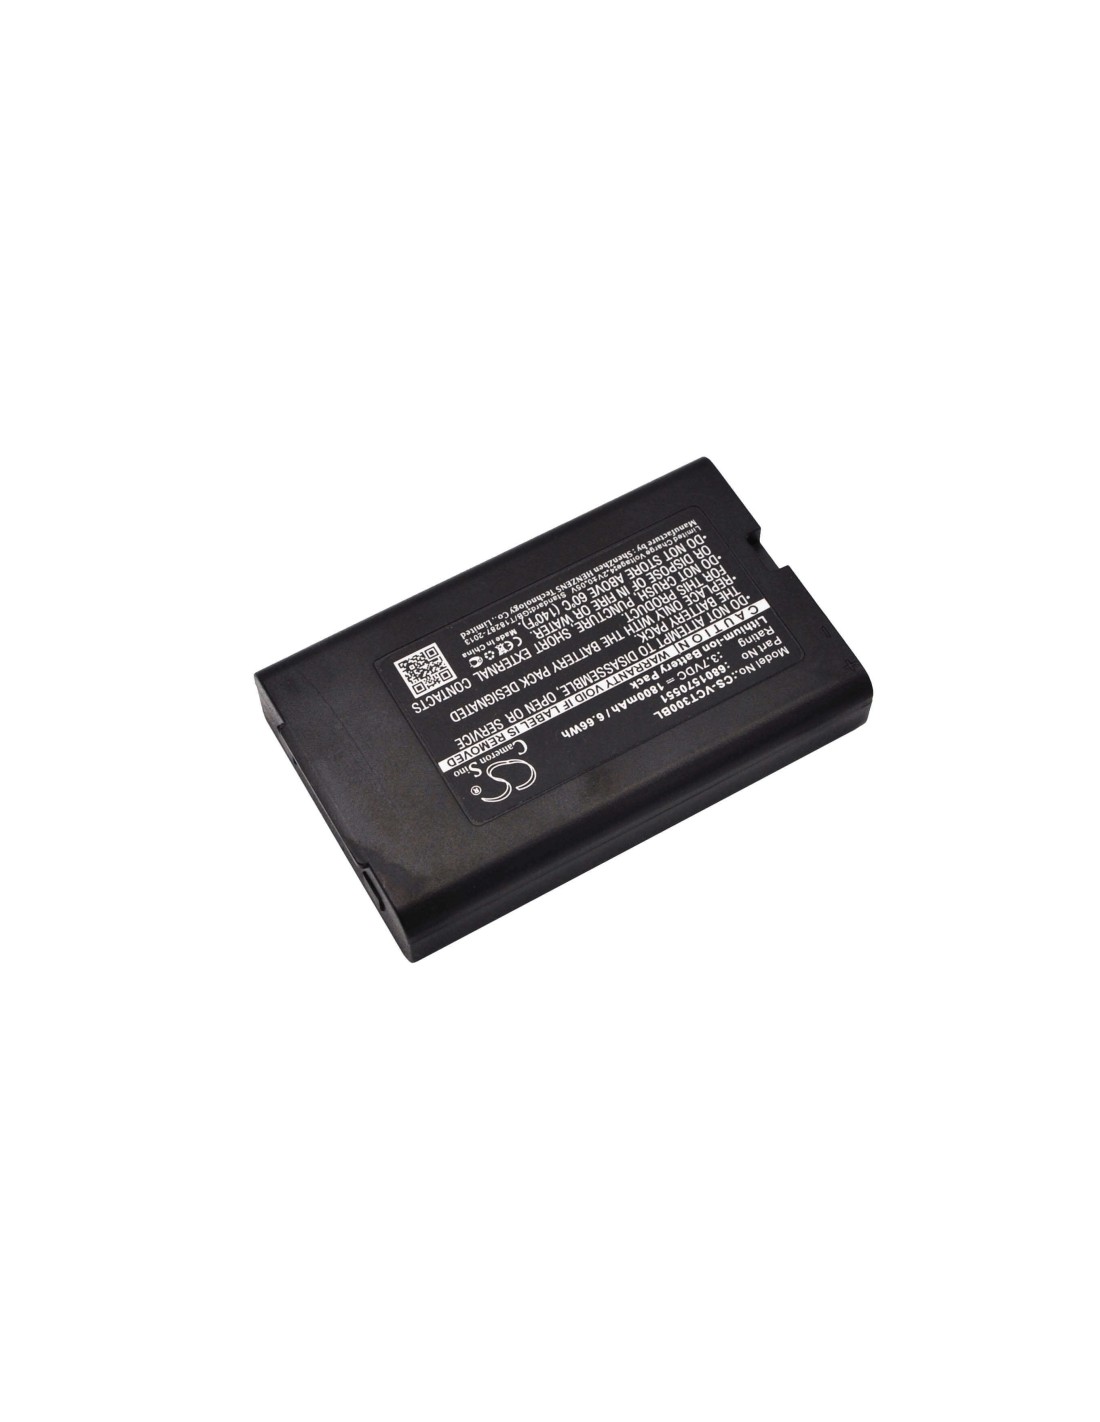 Battery for Vectron Mobilepro B30 3.7V, 1800mAh - 6.66Wh